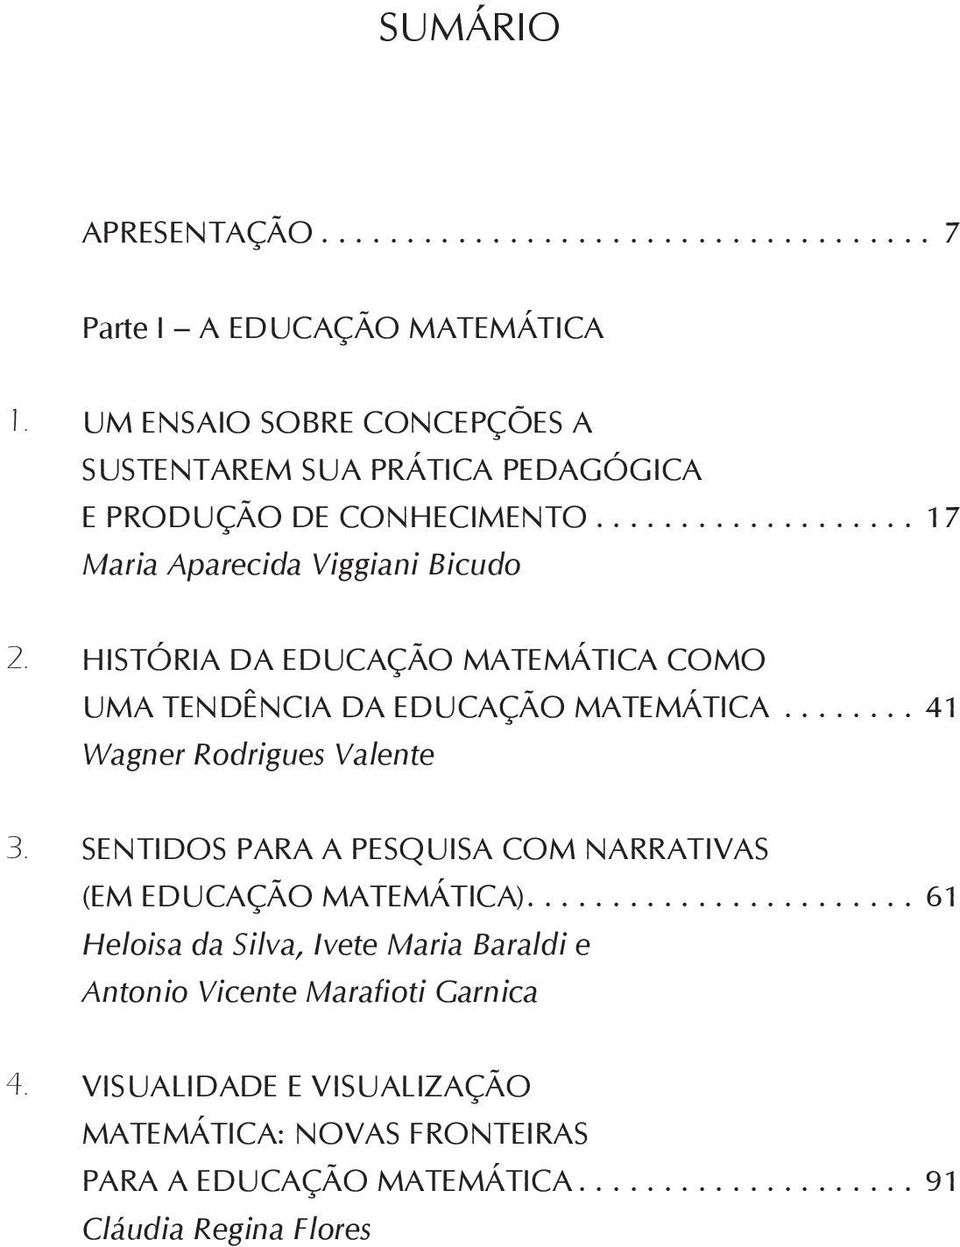 HISTÓRIA DA EDUCAÇÃO MATEMÁTICA COMO UMA TENDÊNCIA DA EDUCAÇÃO MATEMÁTICA... 41 Wagner Rodrigues Valente 3.